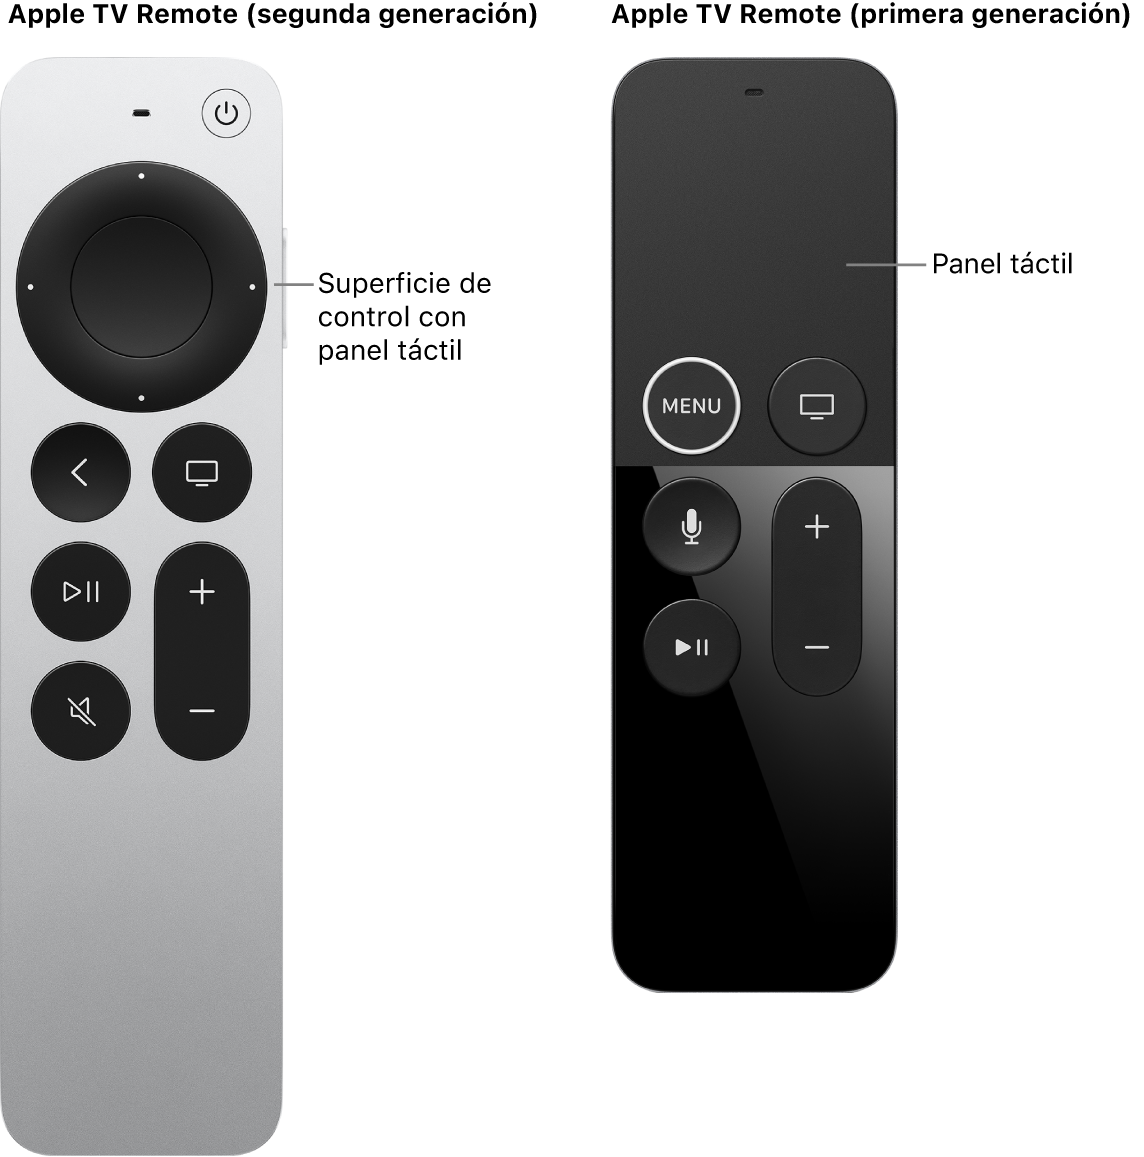 El Apple TV Remote (segunda y tercera generación) con superficie de control, y el Apple TV Remote (primera generación) con superficie táctil